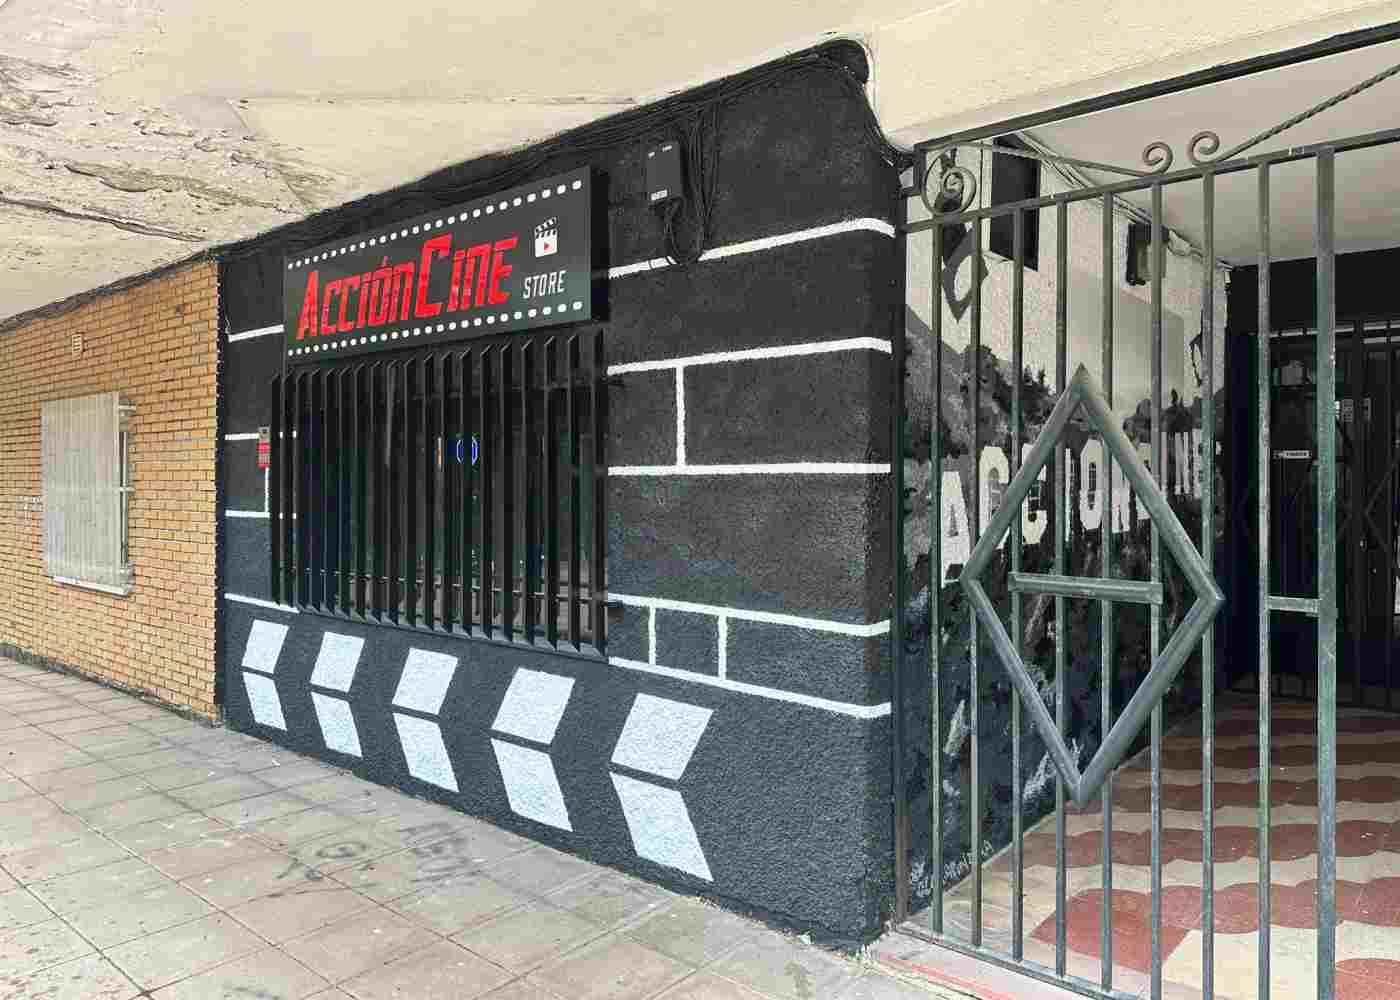 Un lugar de reunión, debate y actividades para los más cinéfilos. La revista Acción Cine abre su primera tienda en Alcorcón